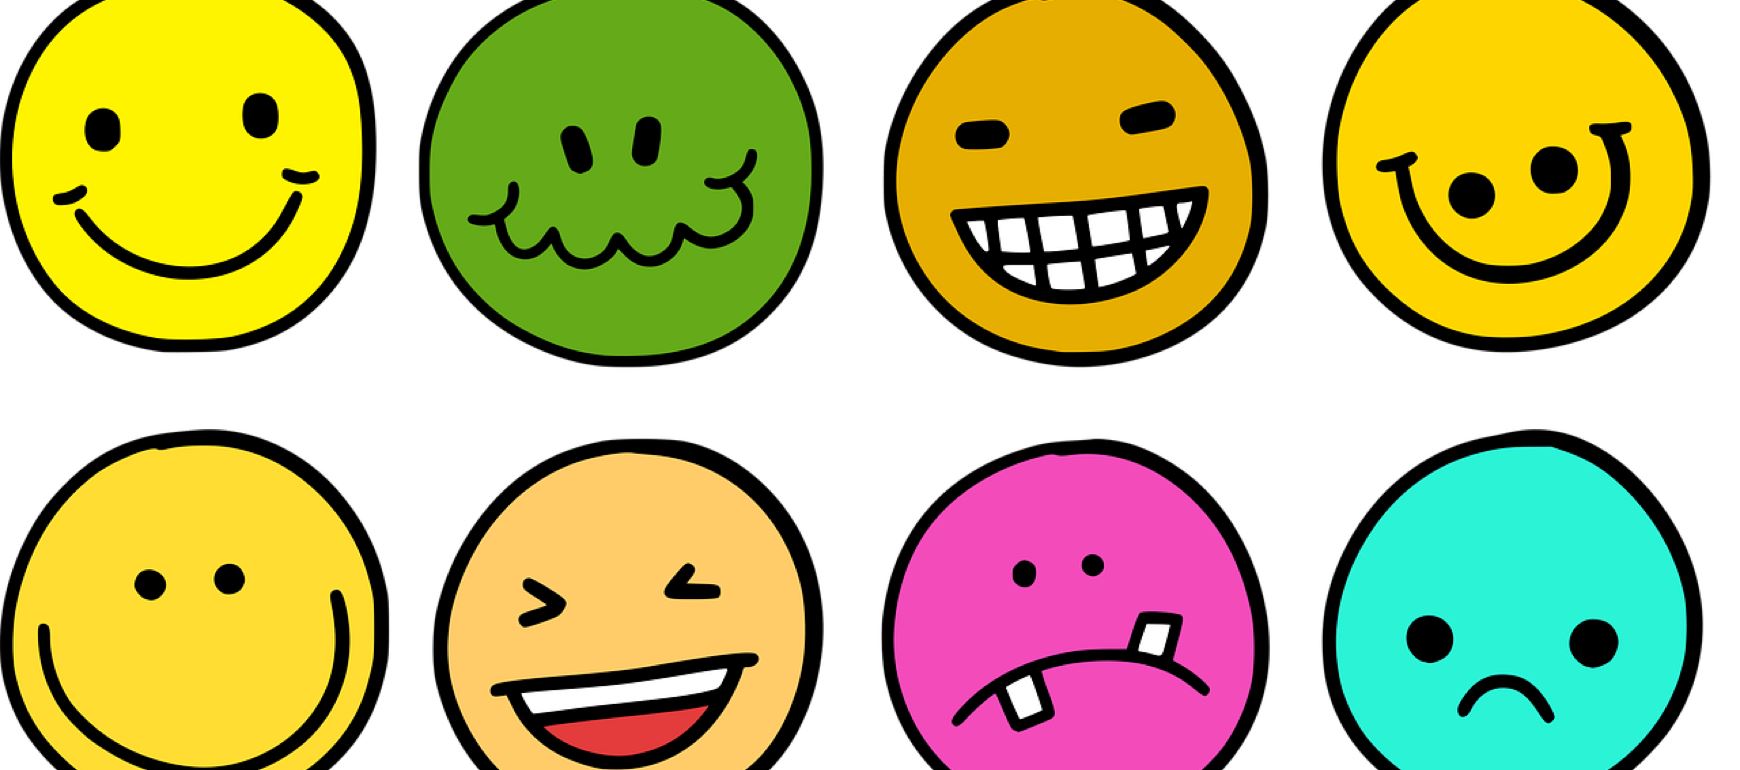 Fun Emoji Coding & Tech Games